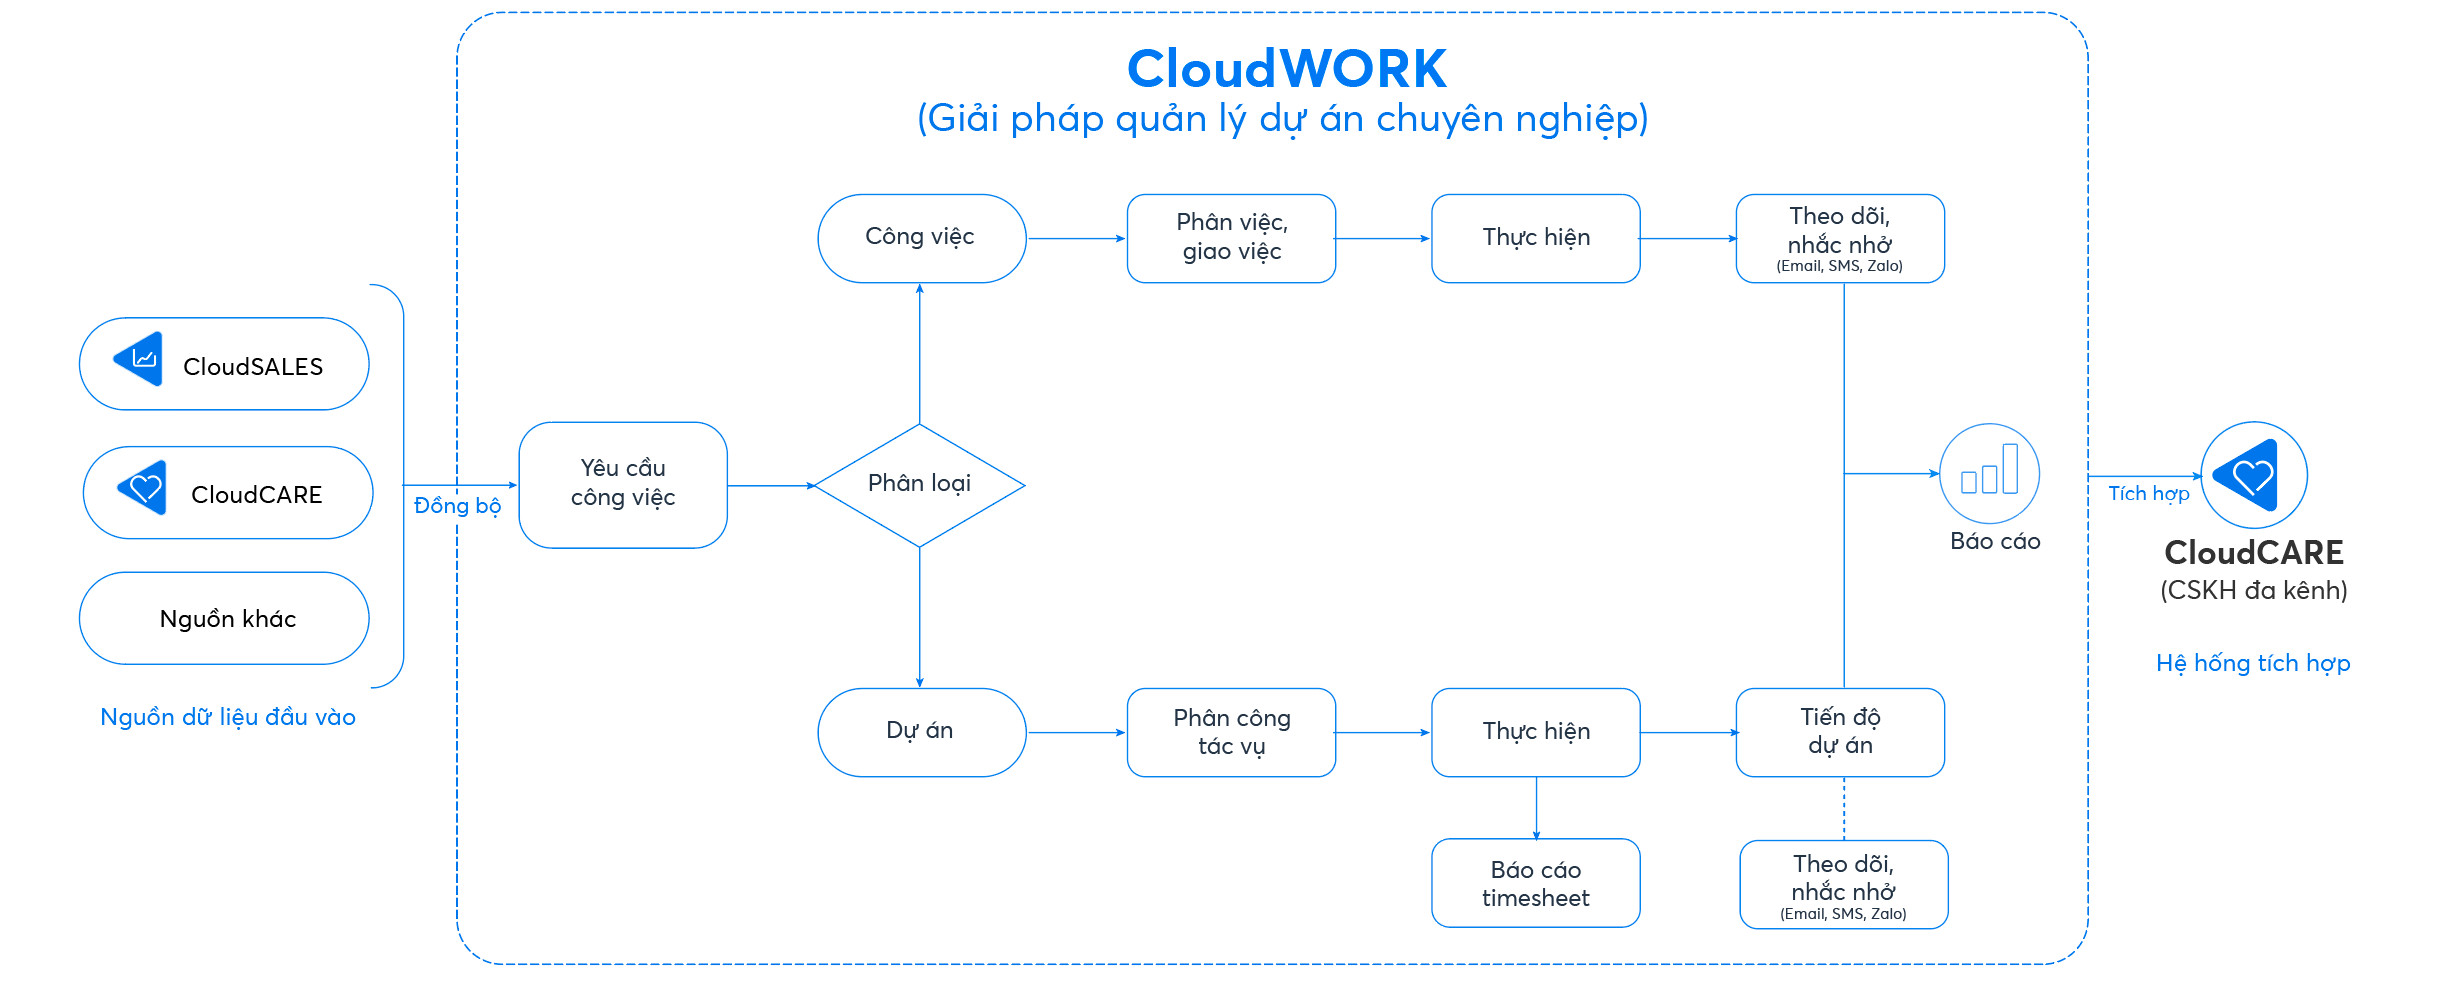 Quy trình quản lý dự án chuyên nghiệp bằng CloudWORK